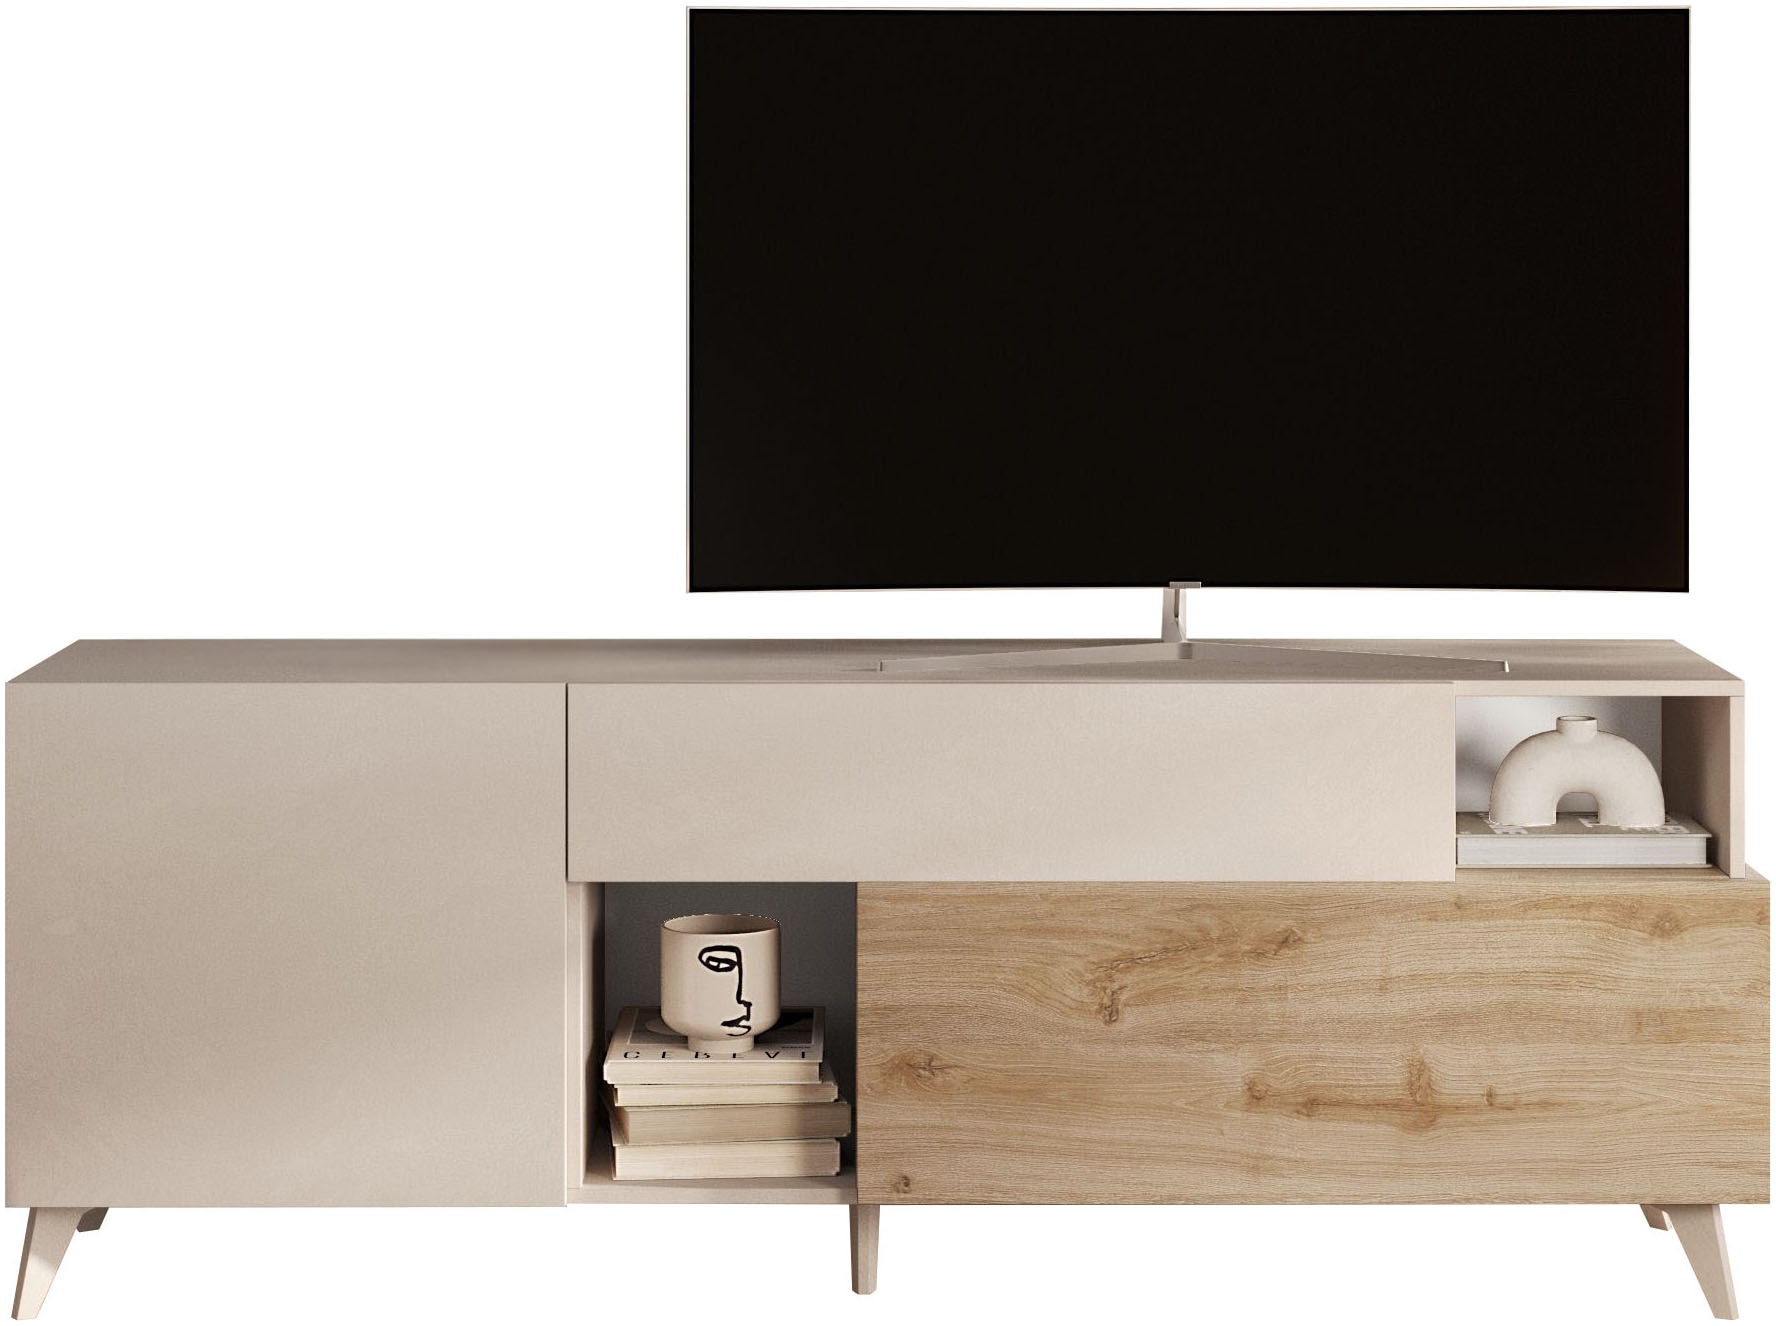 INOSIGN Lowboard »Monaco Breite 181 cm, TV-Board mit 1 Tür, 1 Klappe u. 1 Schubkasten«, Fernsehtisch, TV-Schrank, Soft/Self Closing